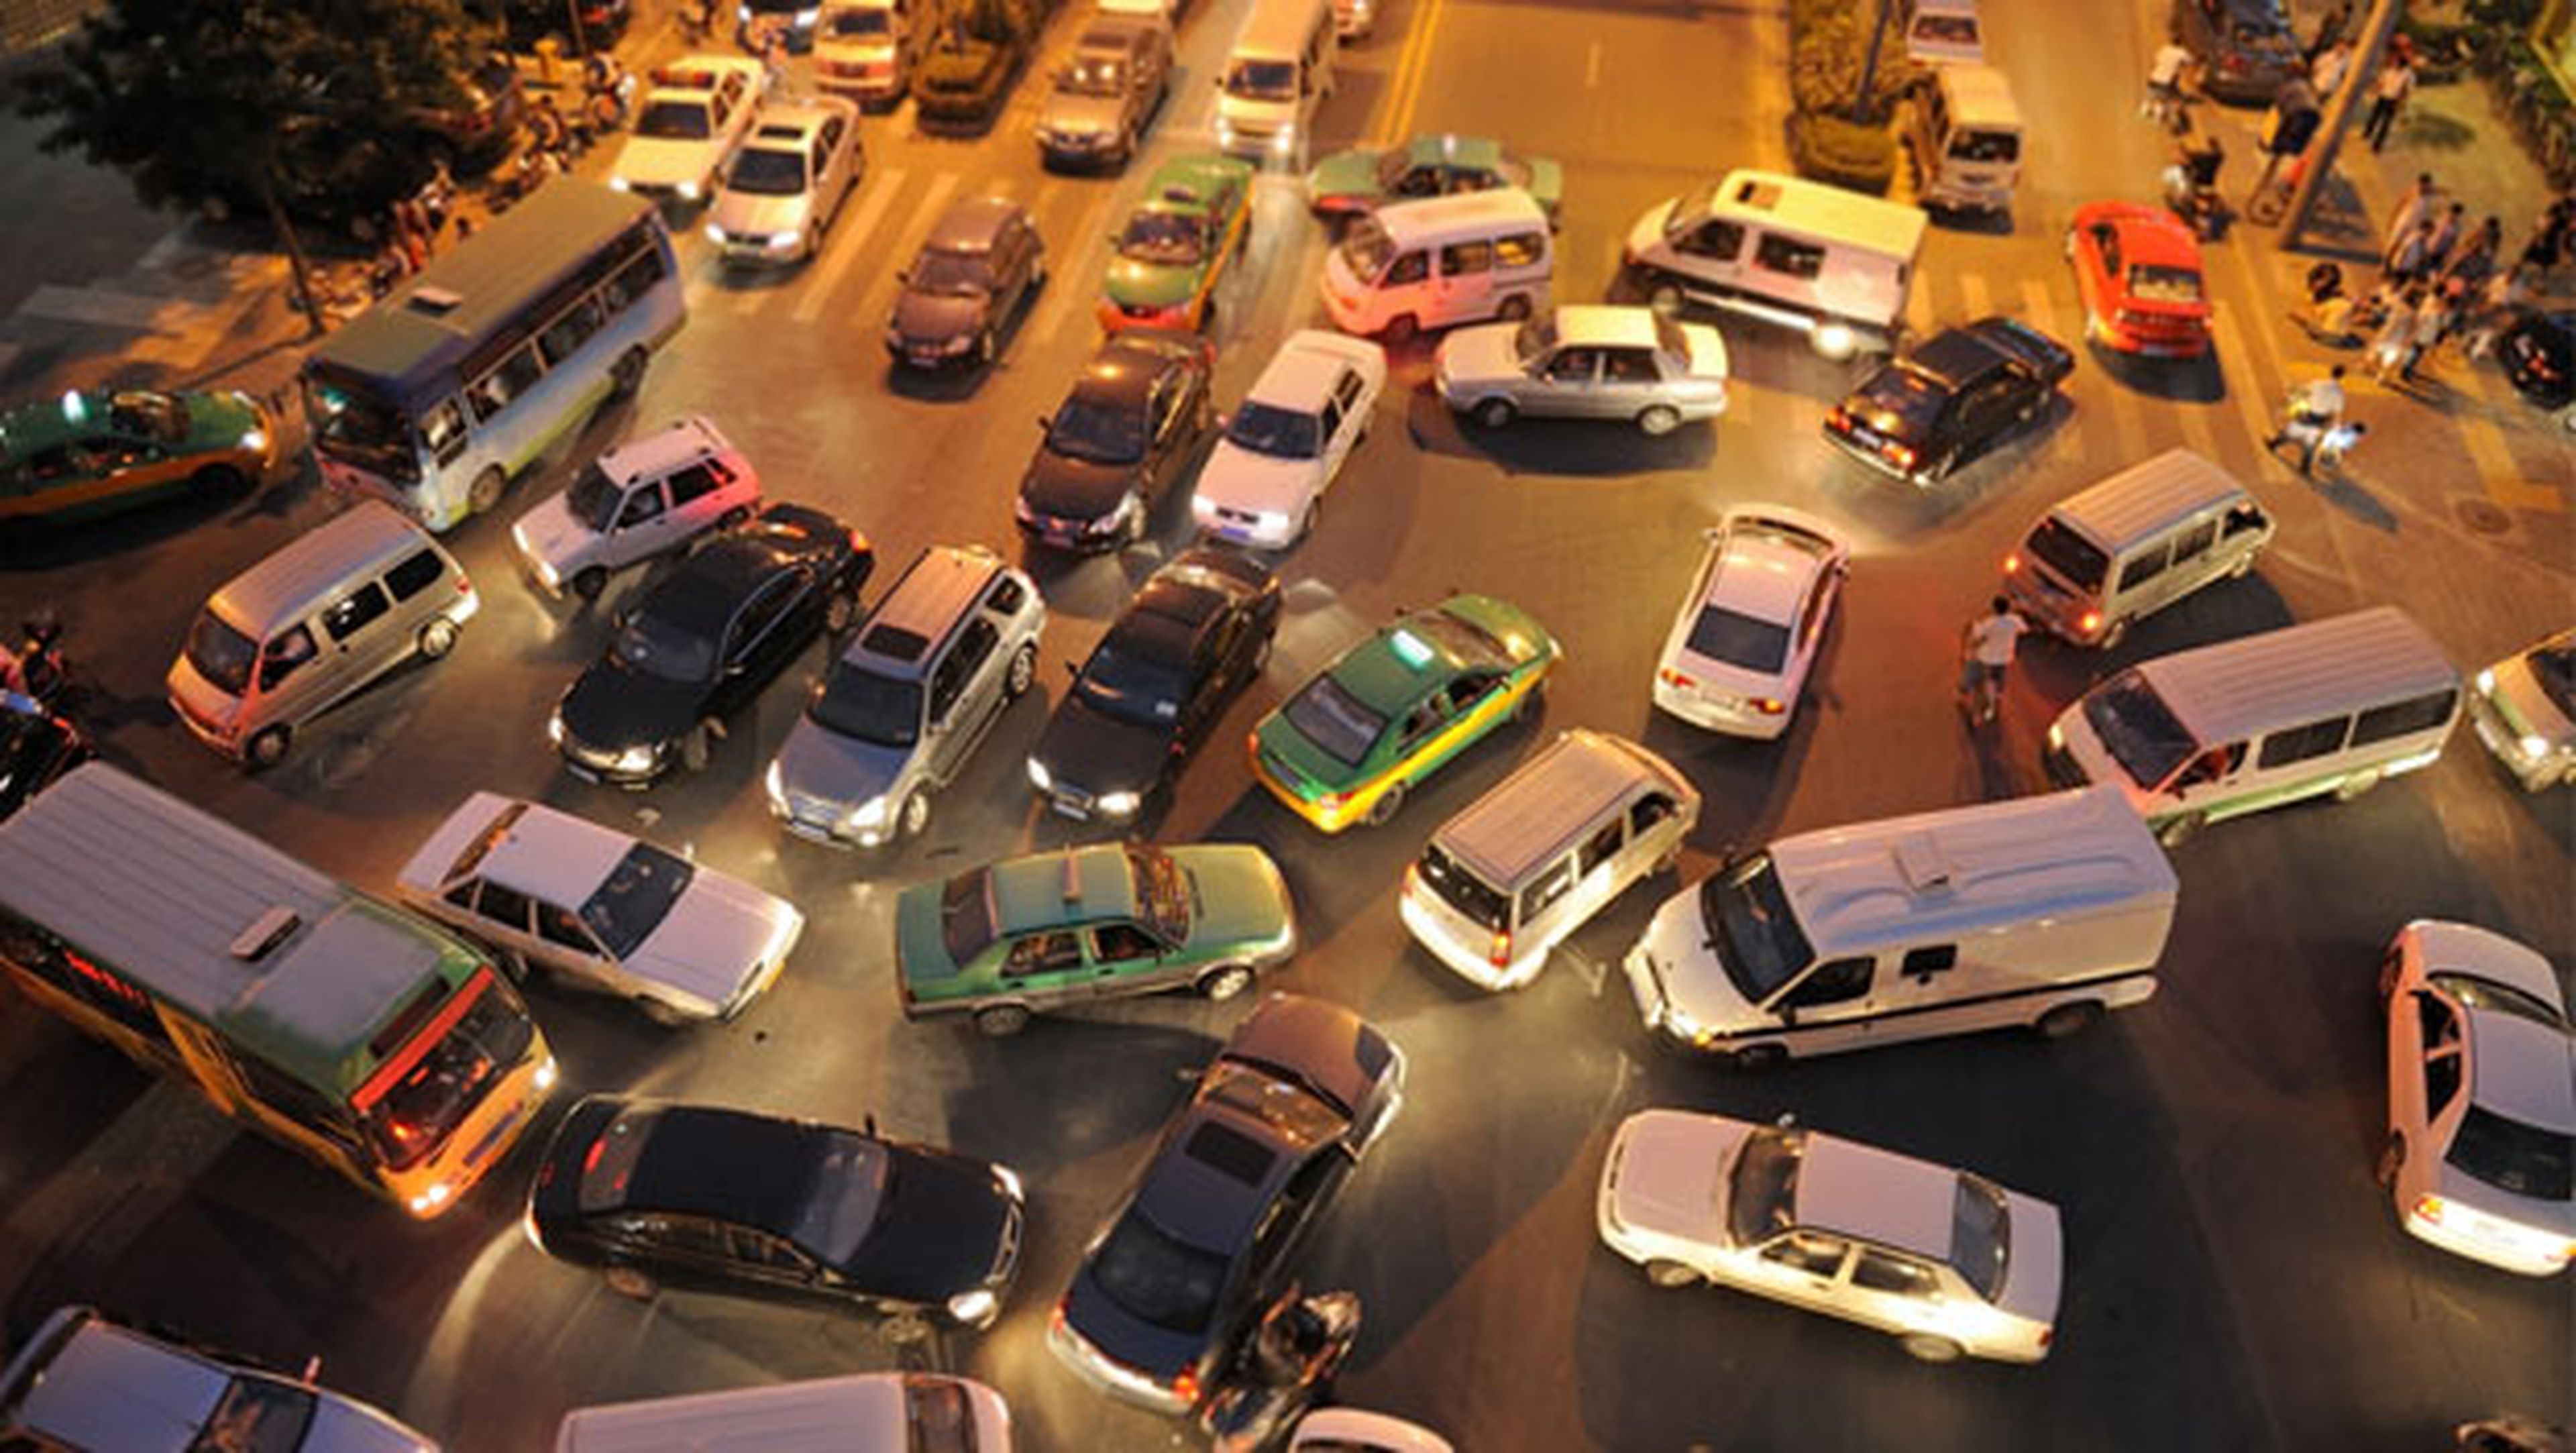 Trolean la app Waze para expulsar el tráfico de sus barrios